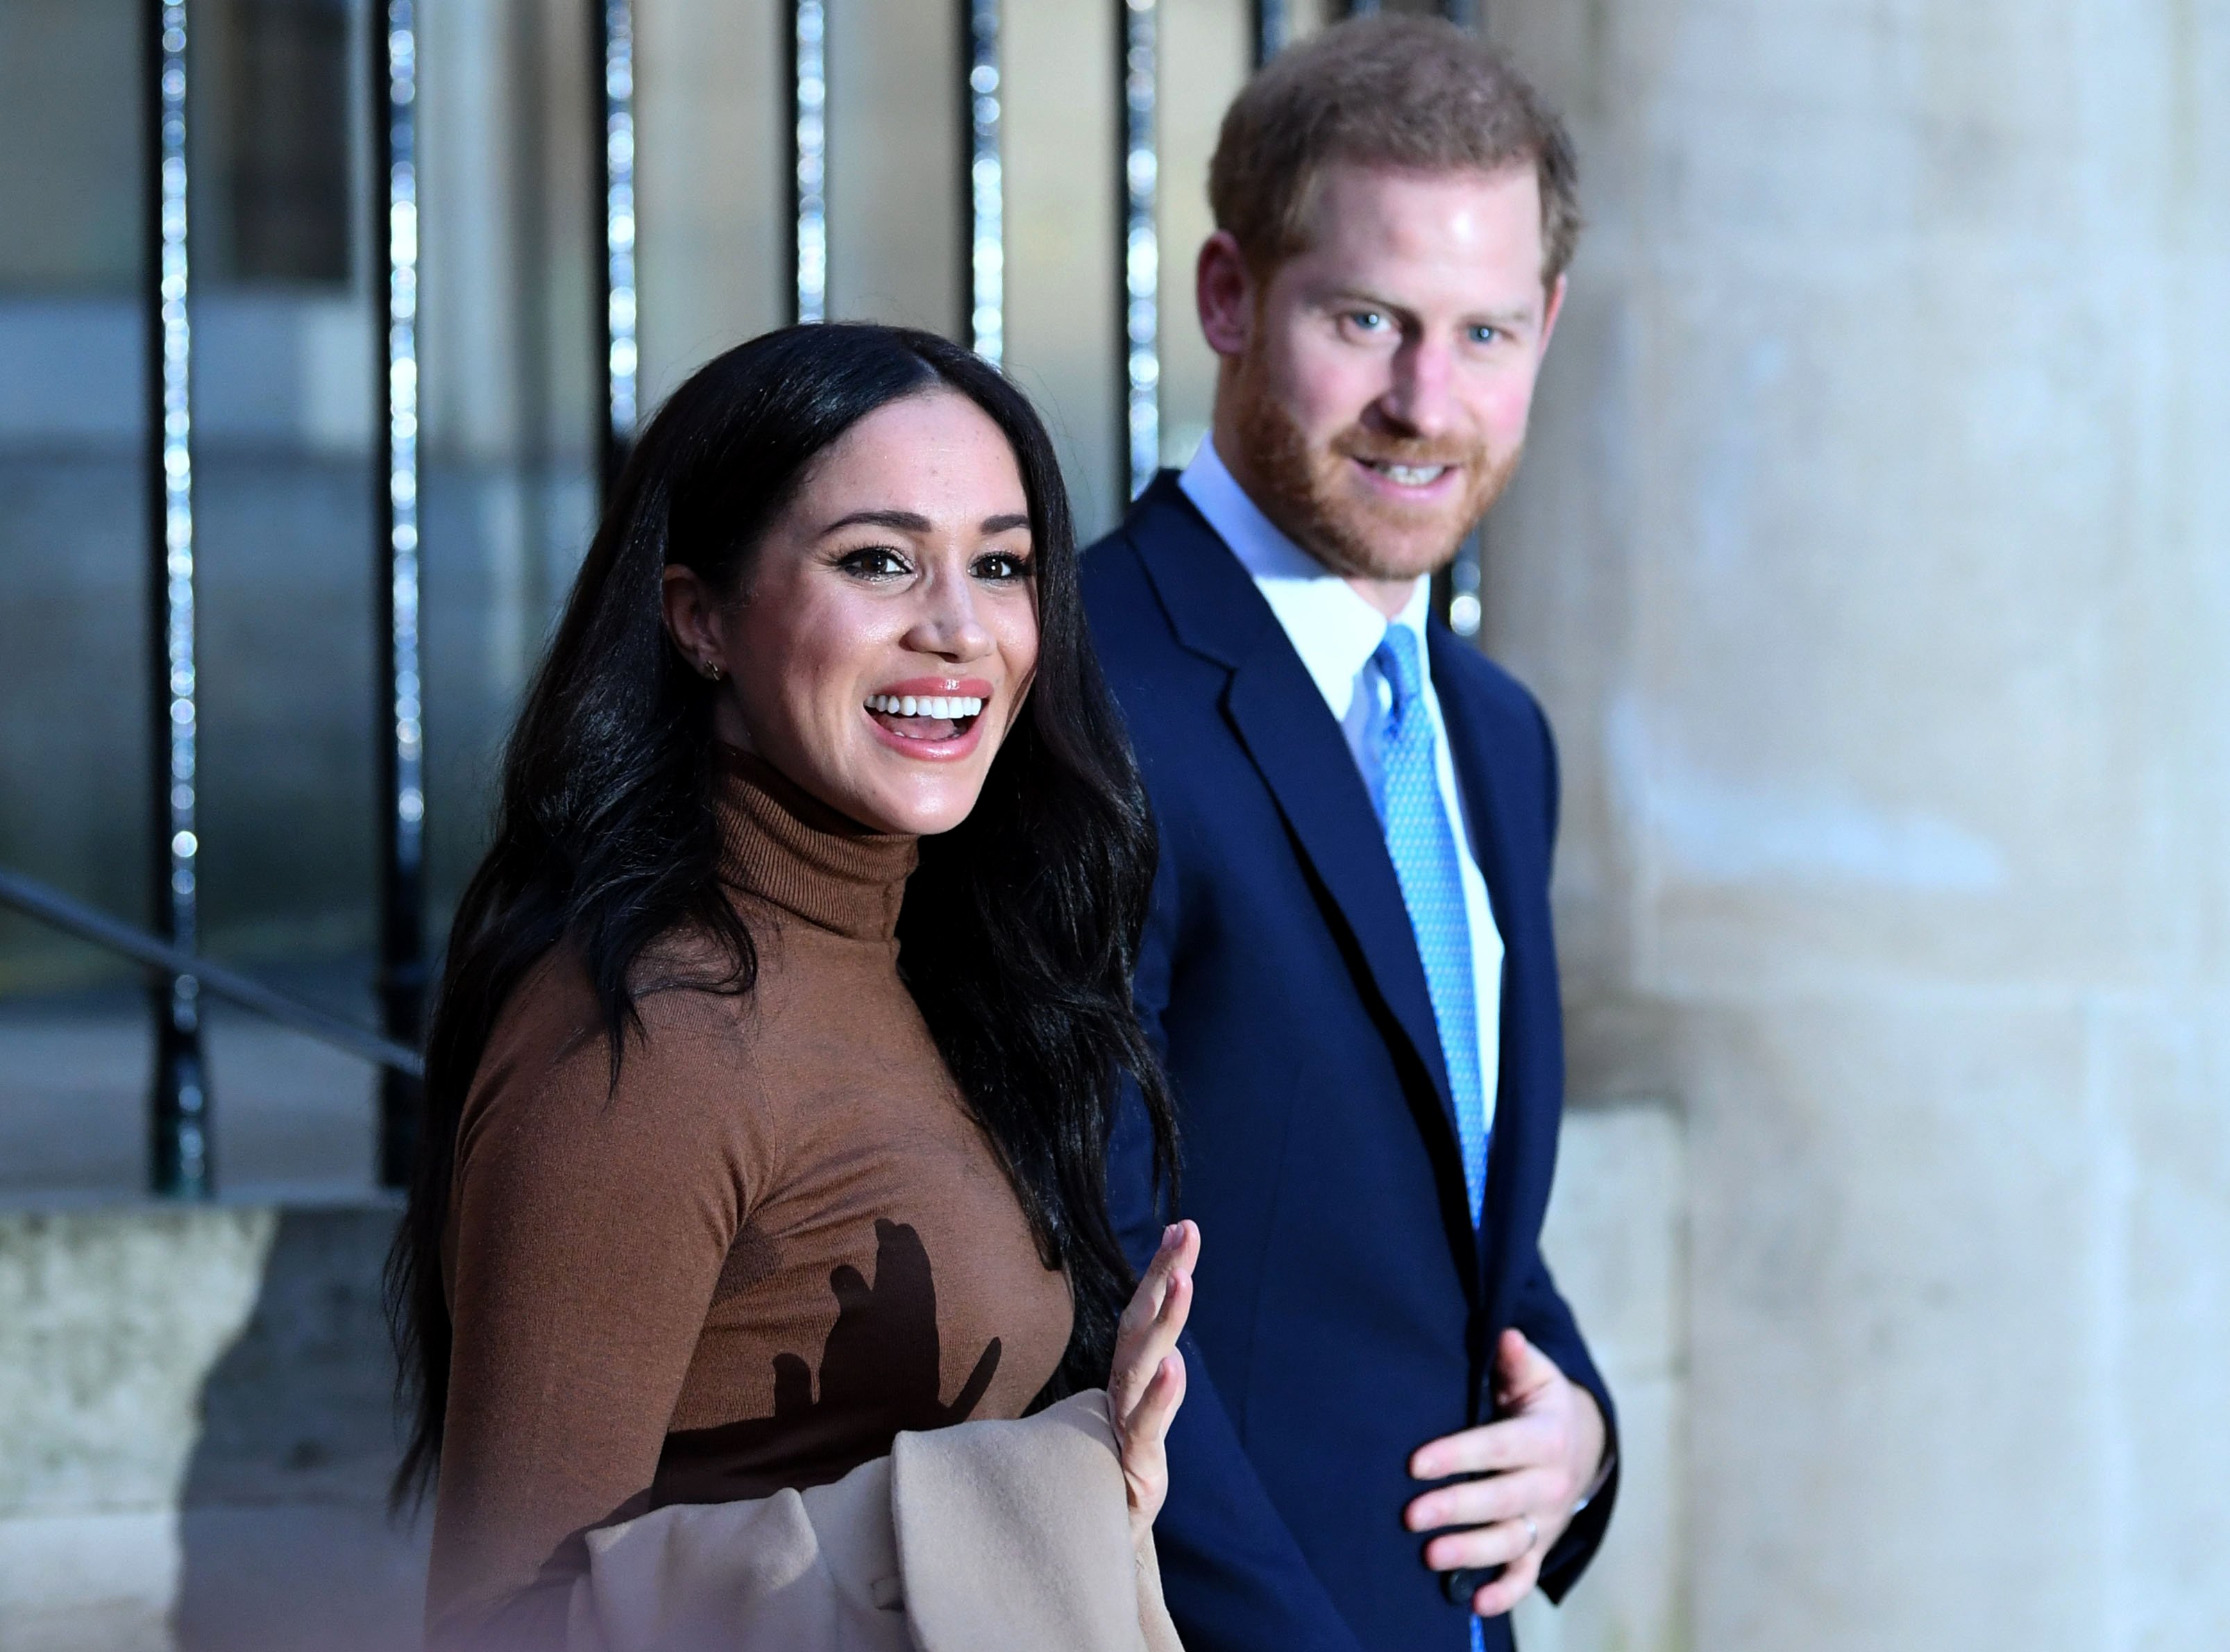 Príncipe Harry y Meghan Markle después de su visita a la Casa de Canadá, el 7 de enero de 2020 en Londres, Inglaterra. | Foto: Getty Images.